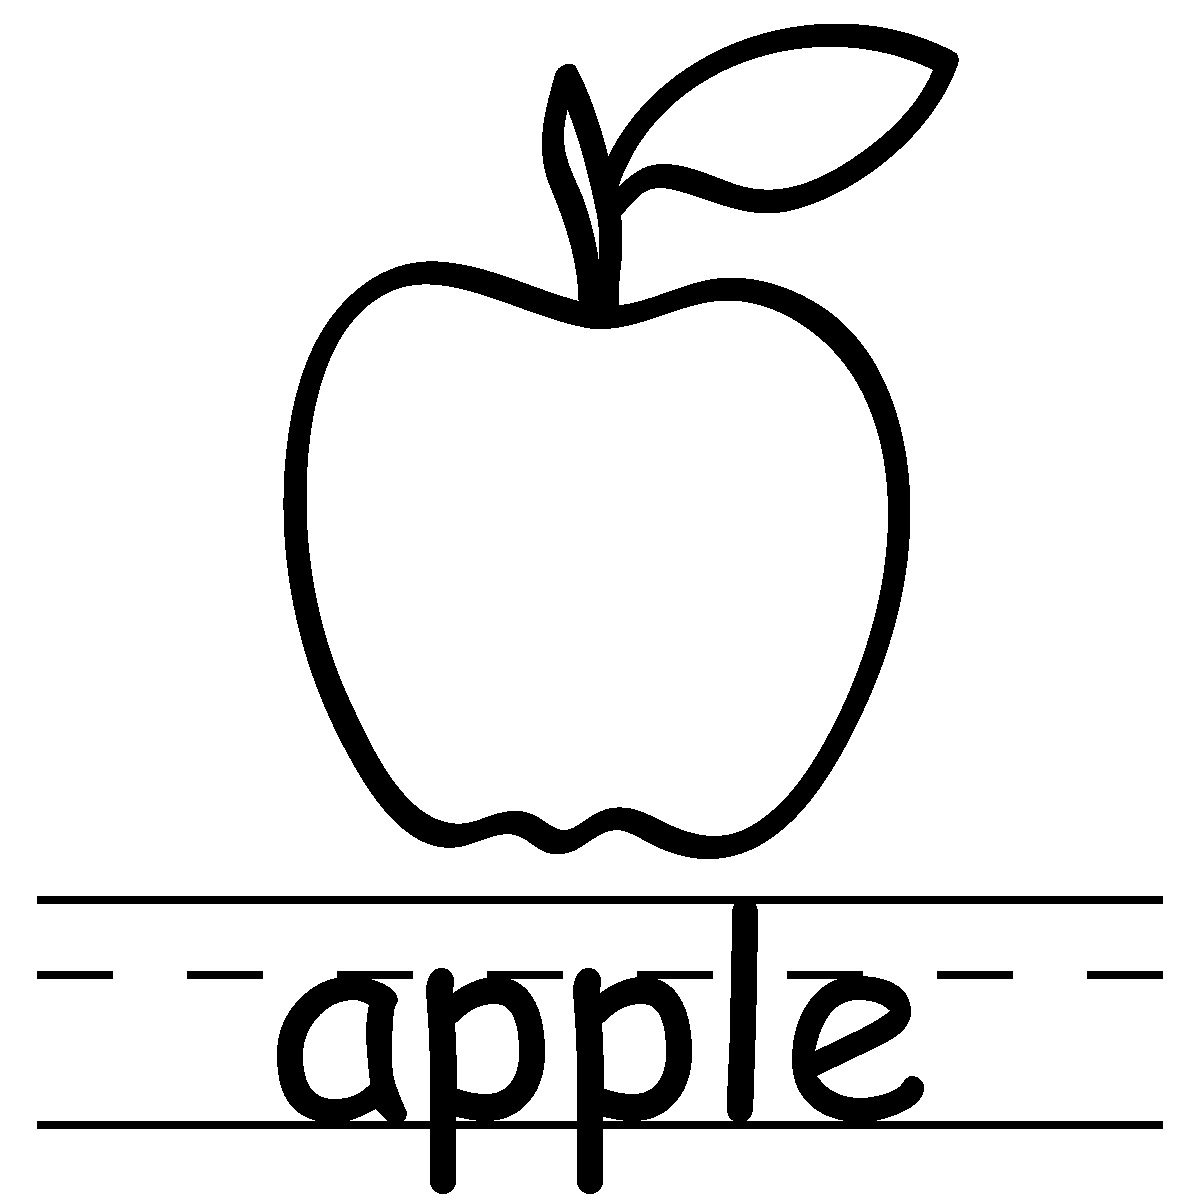 apple clipart black and white teacher